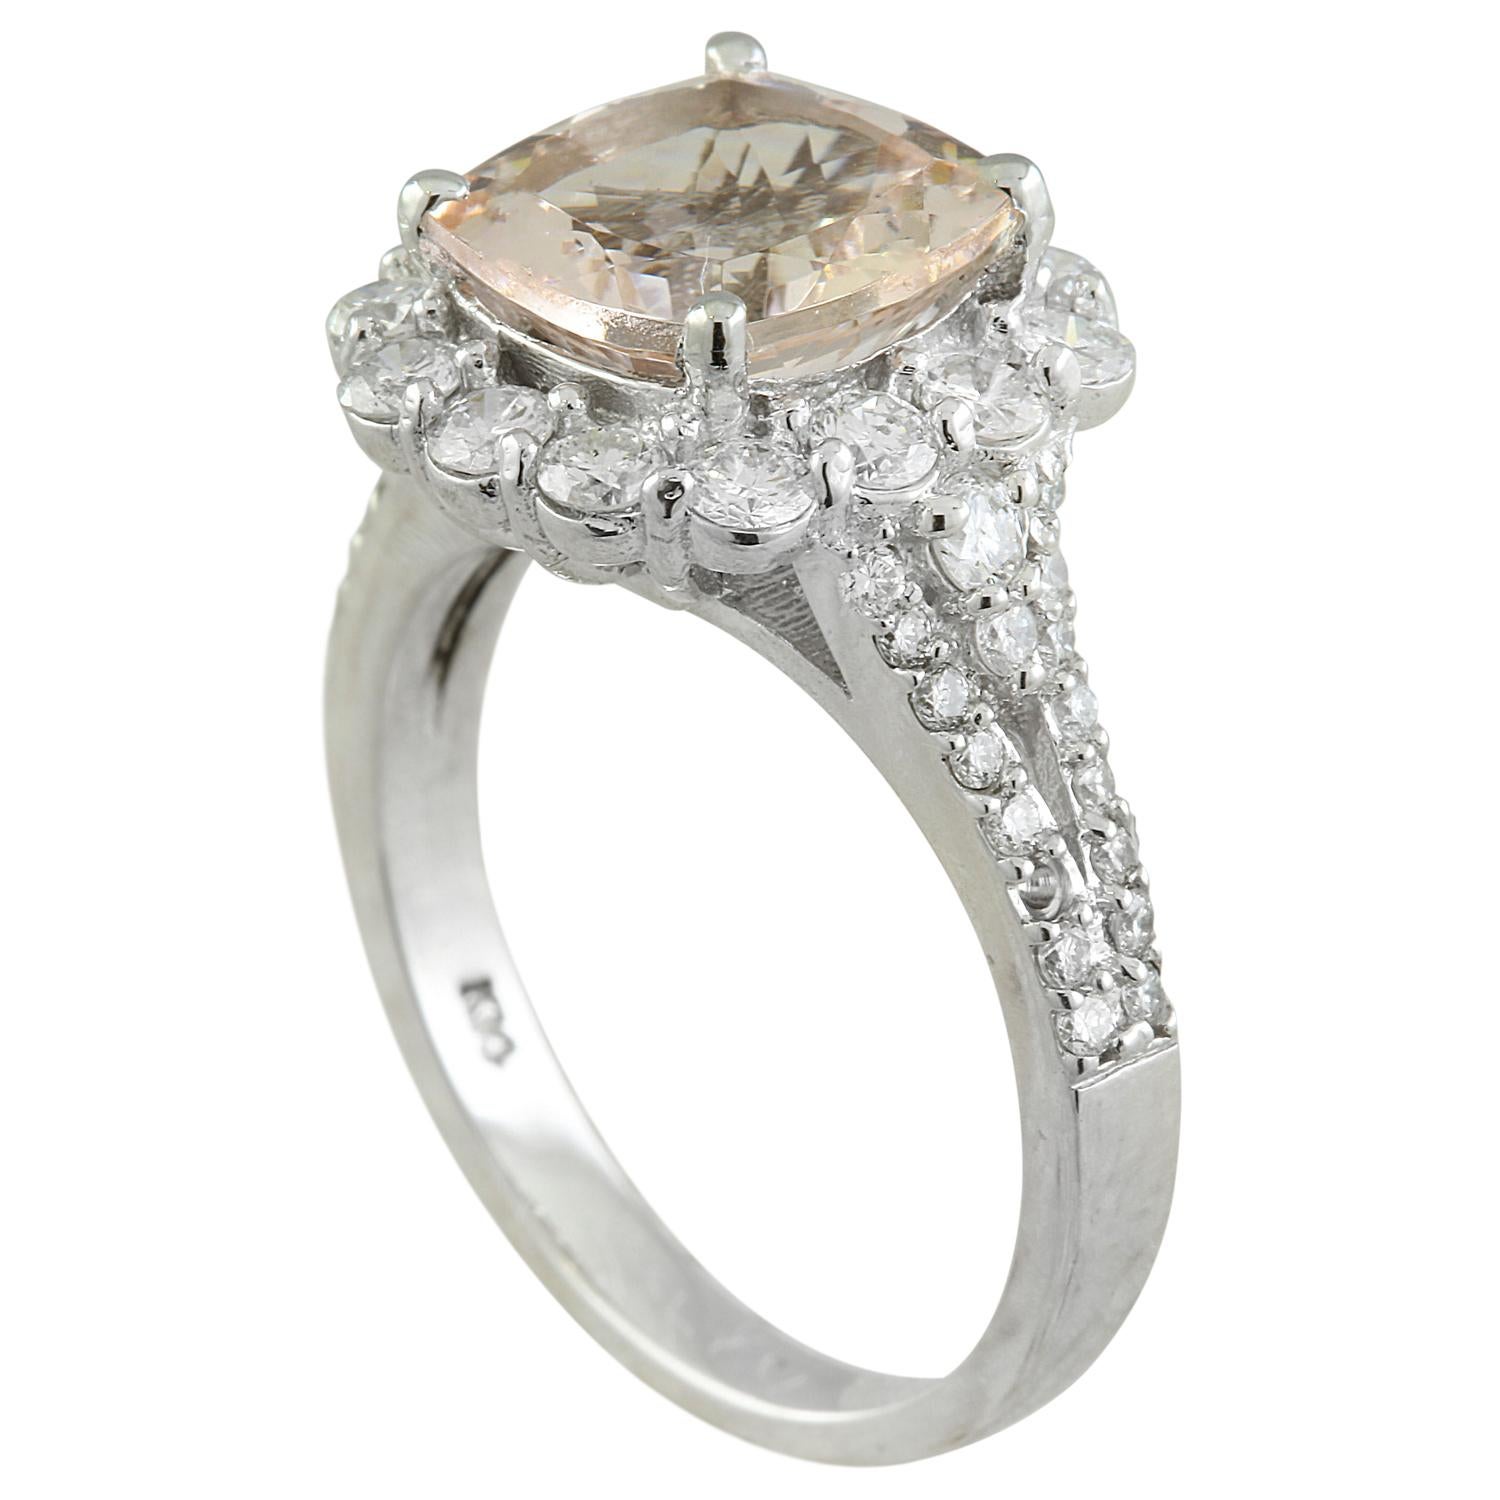 3.70 Carat Natural Morganite 14 Karat Solid White Gold Diamond Ring
Estampillé : 14K 
Poids total de l'anneau : 5 grammes 
Poids de la Morganite : 2.60 Carat (9.00x9.00 Millimètres)  
Poids du diamant : 1,10 carat (couleur F-G, pureté VS2-SI1)